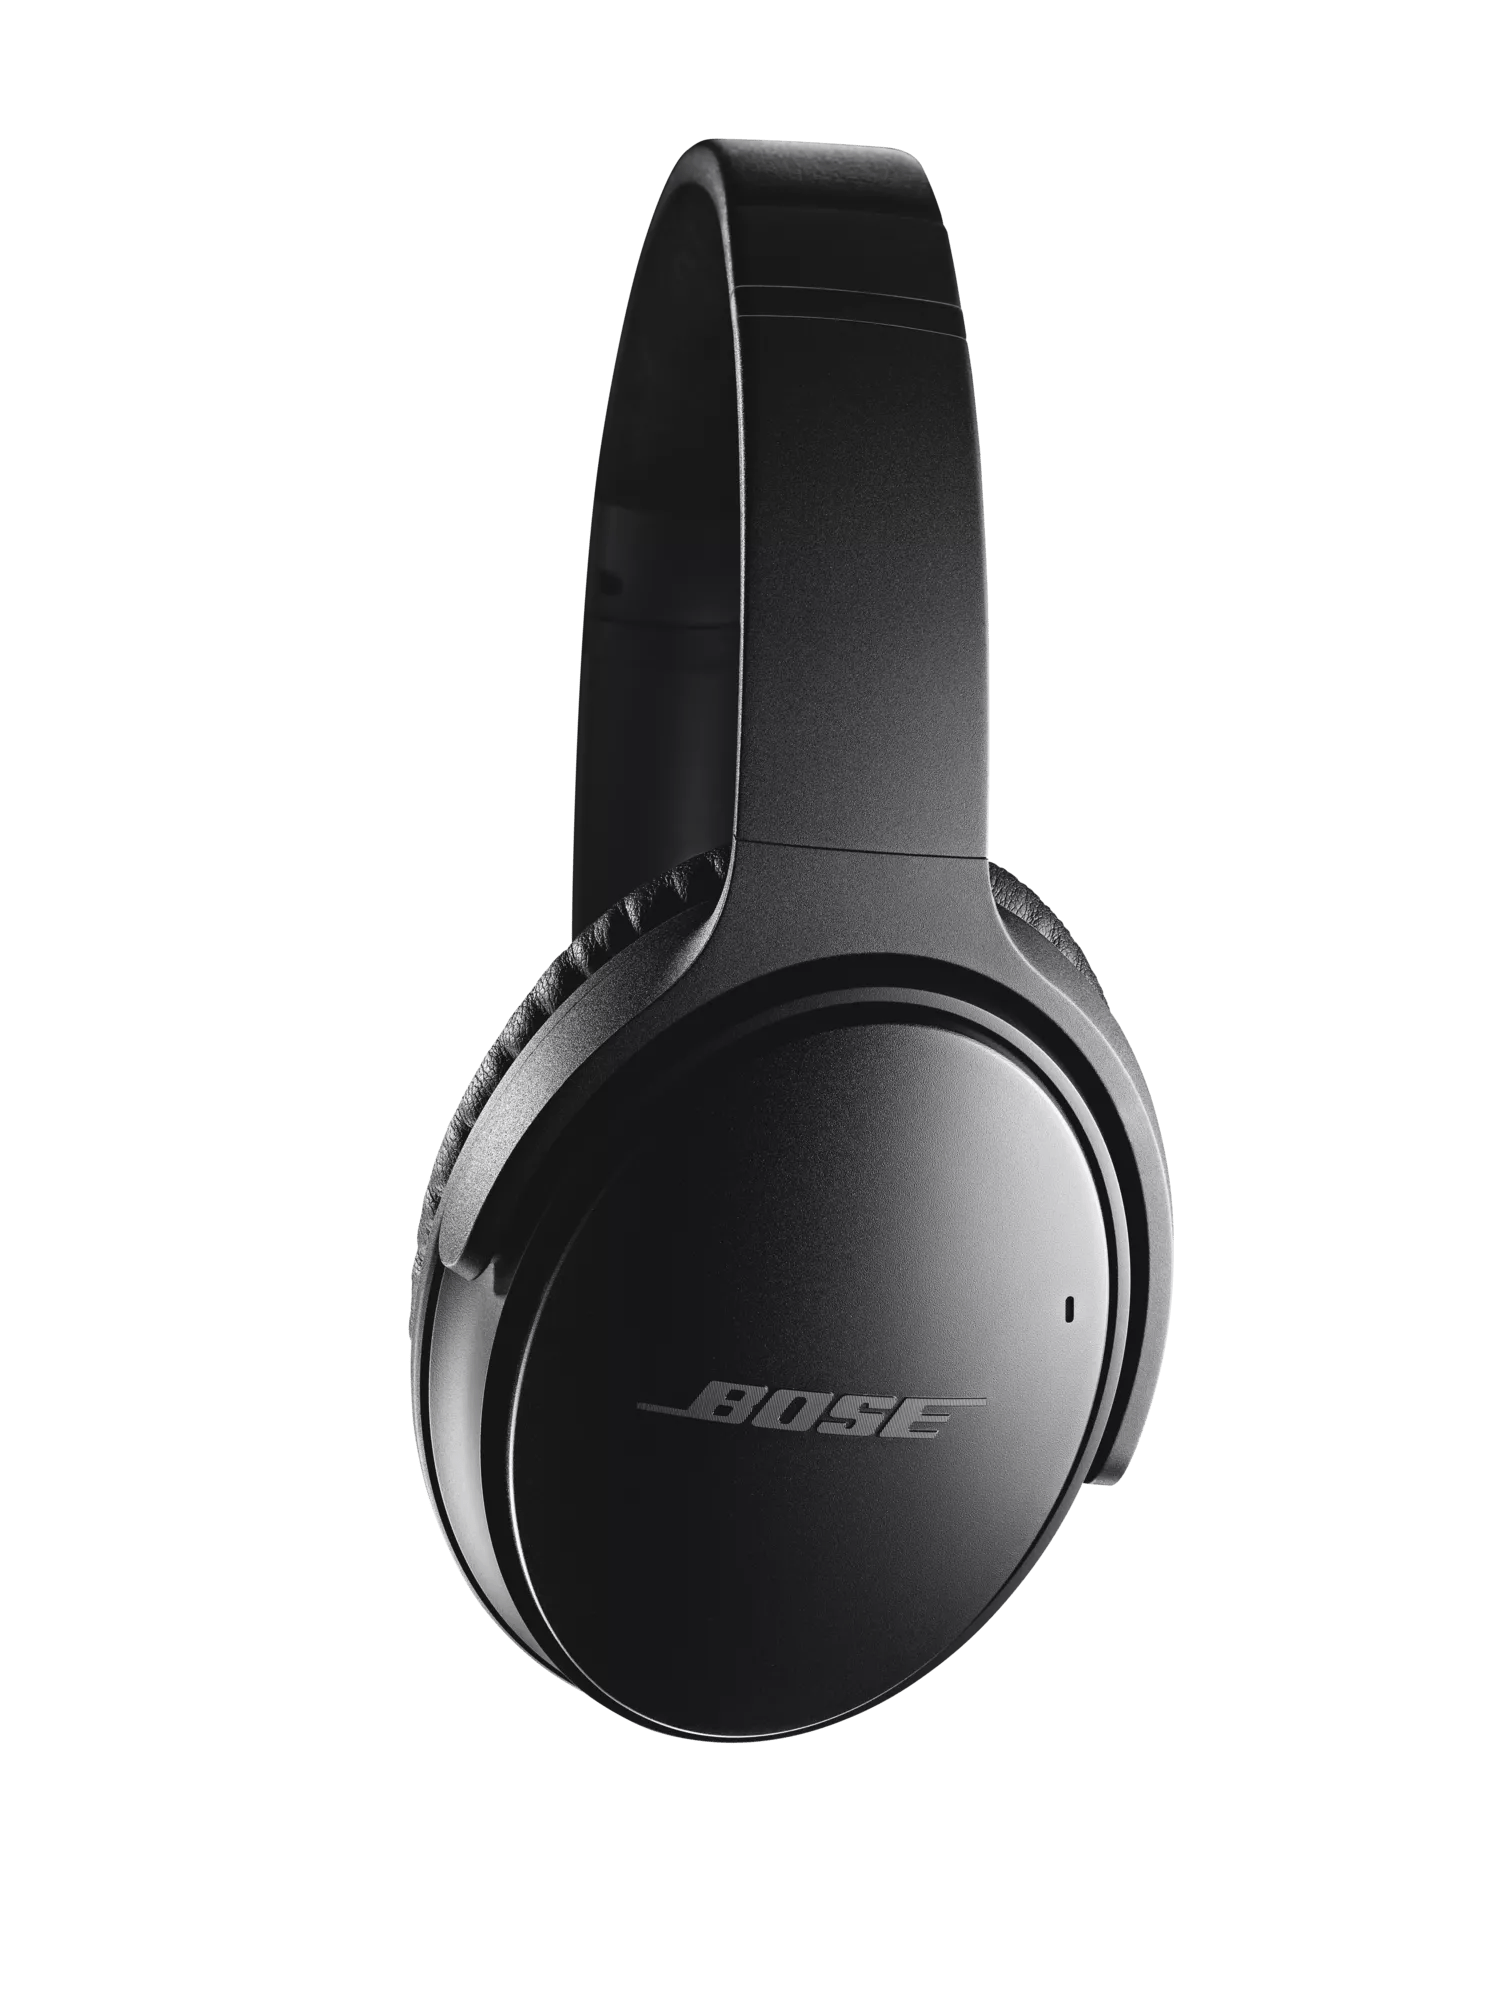 Bose QuietComfort 35 wireless headphones